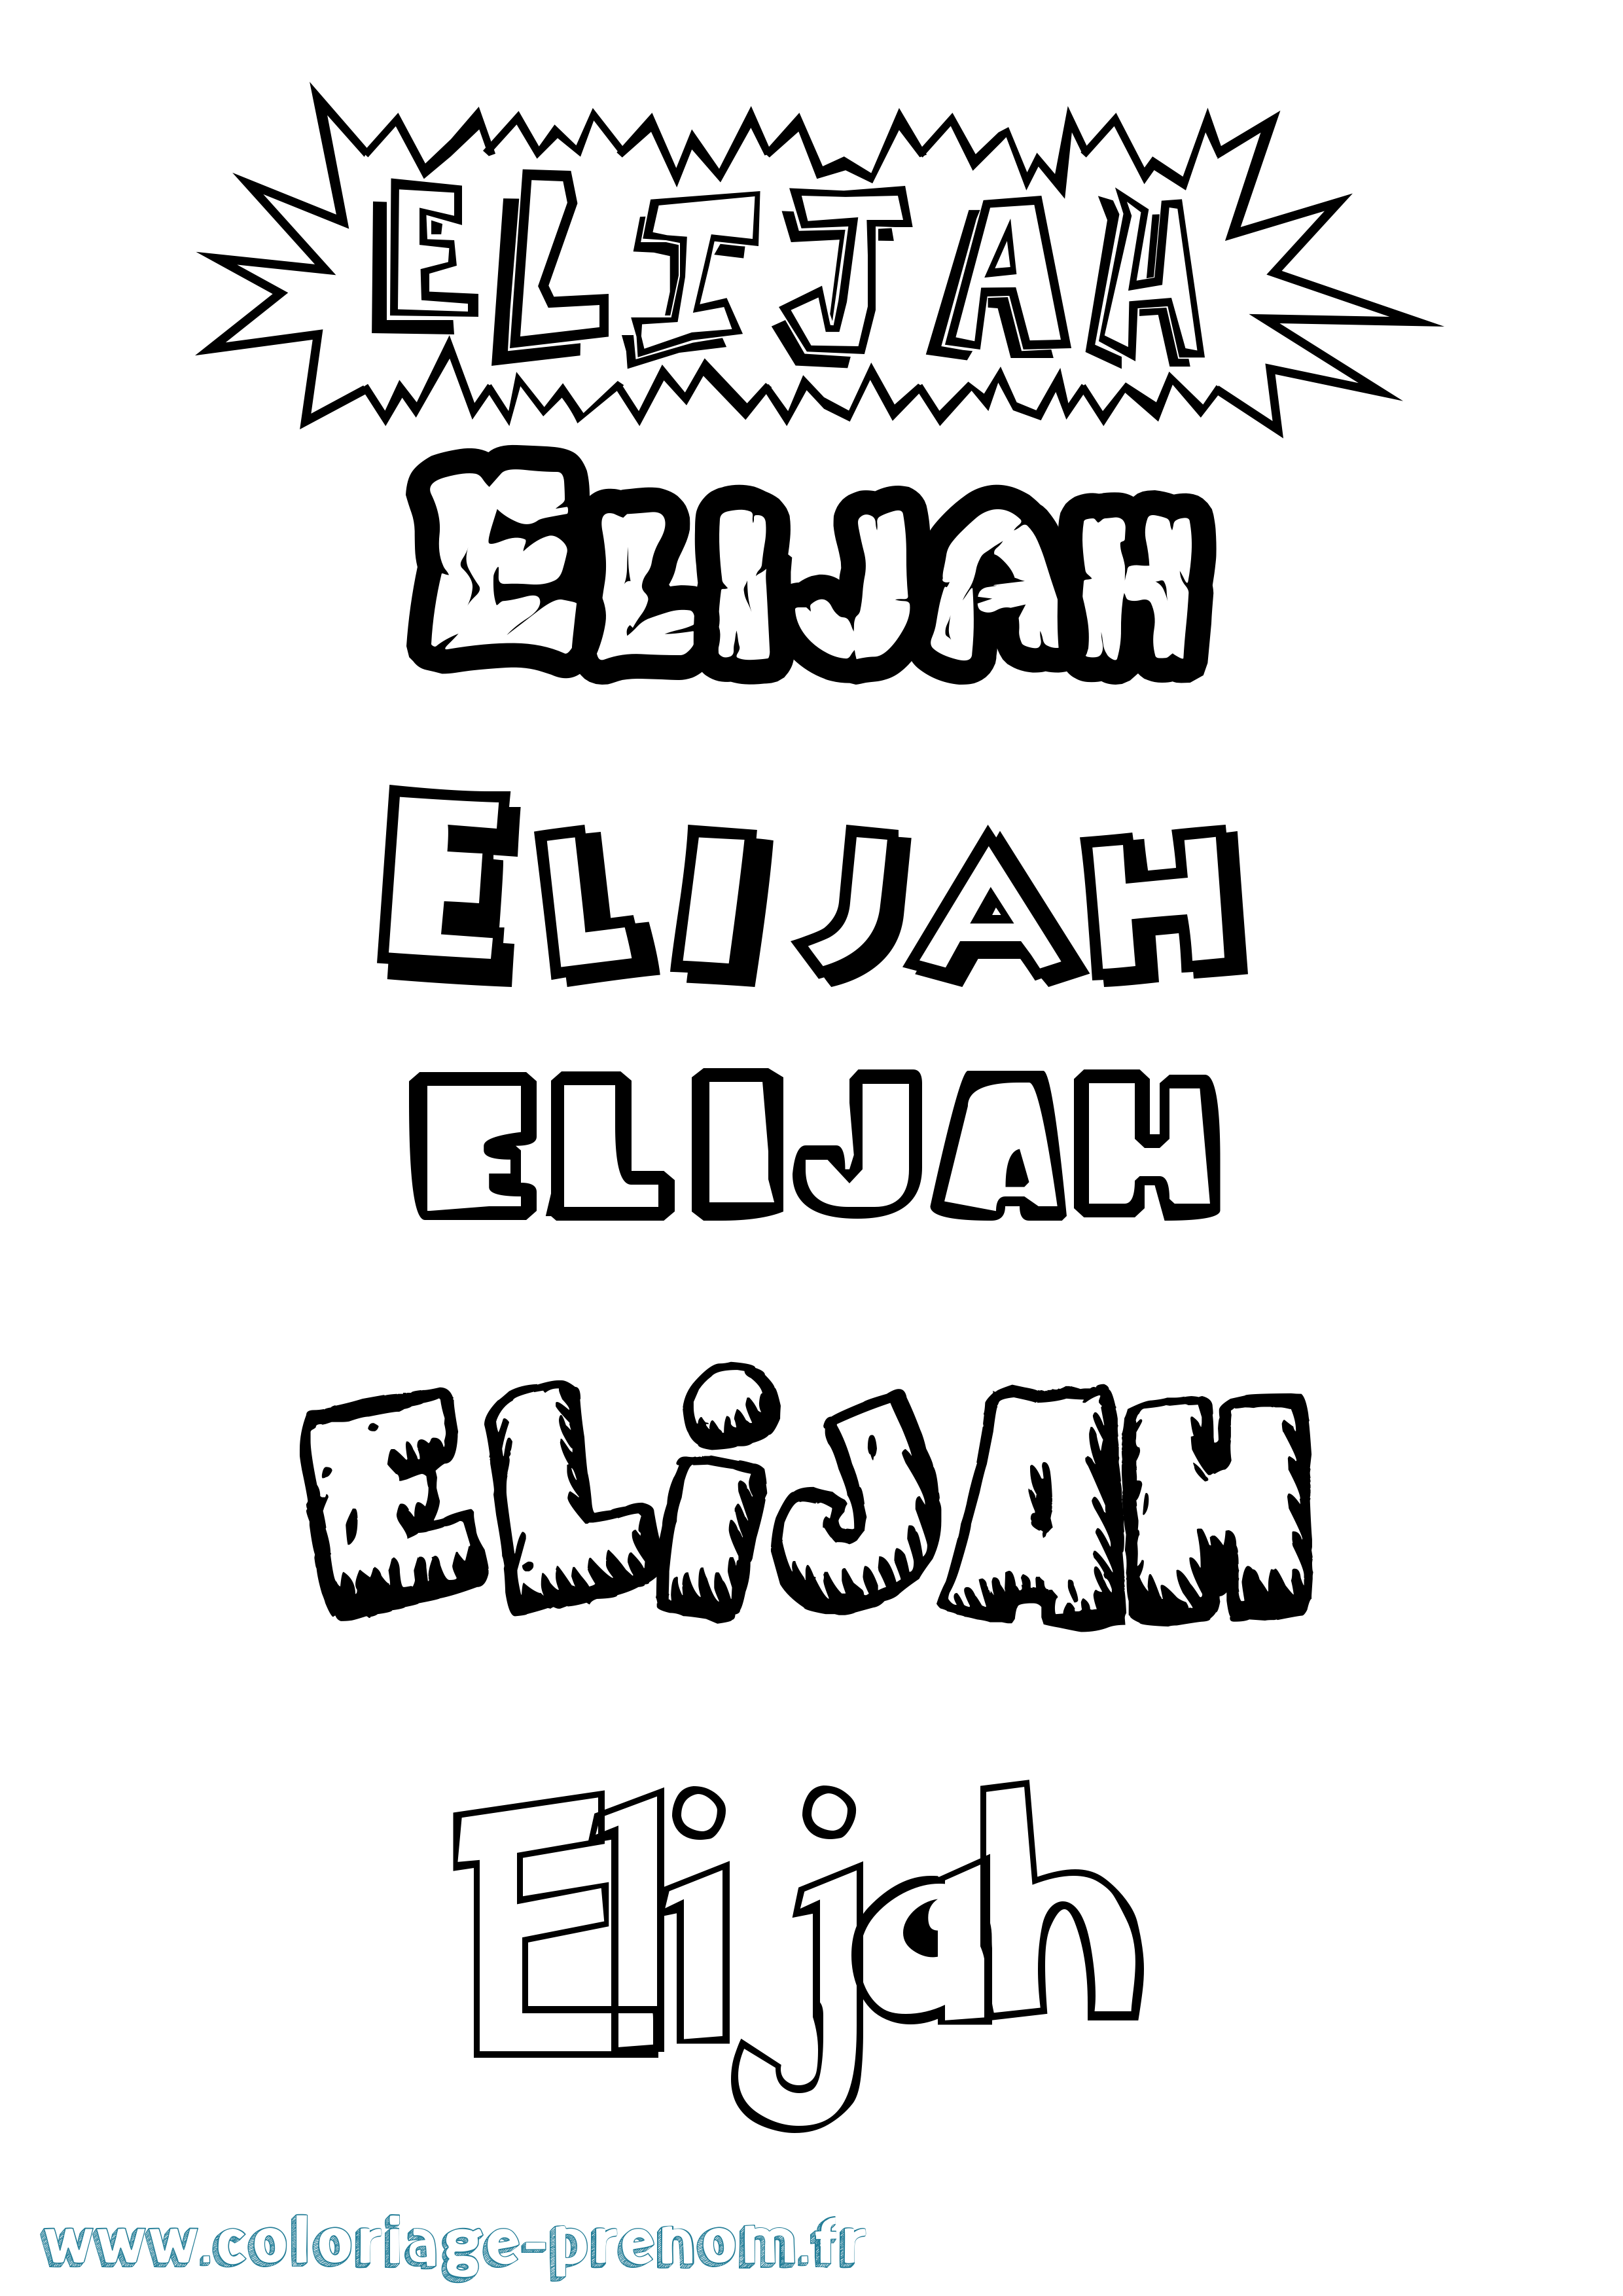 Coloriage prénom Elijah Dessin Animé